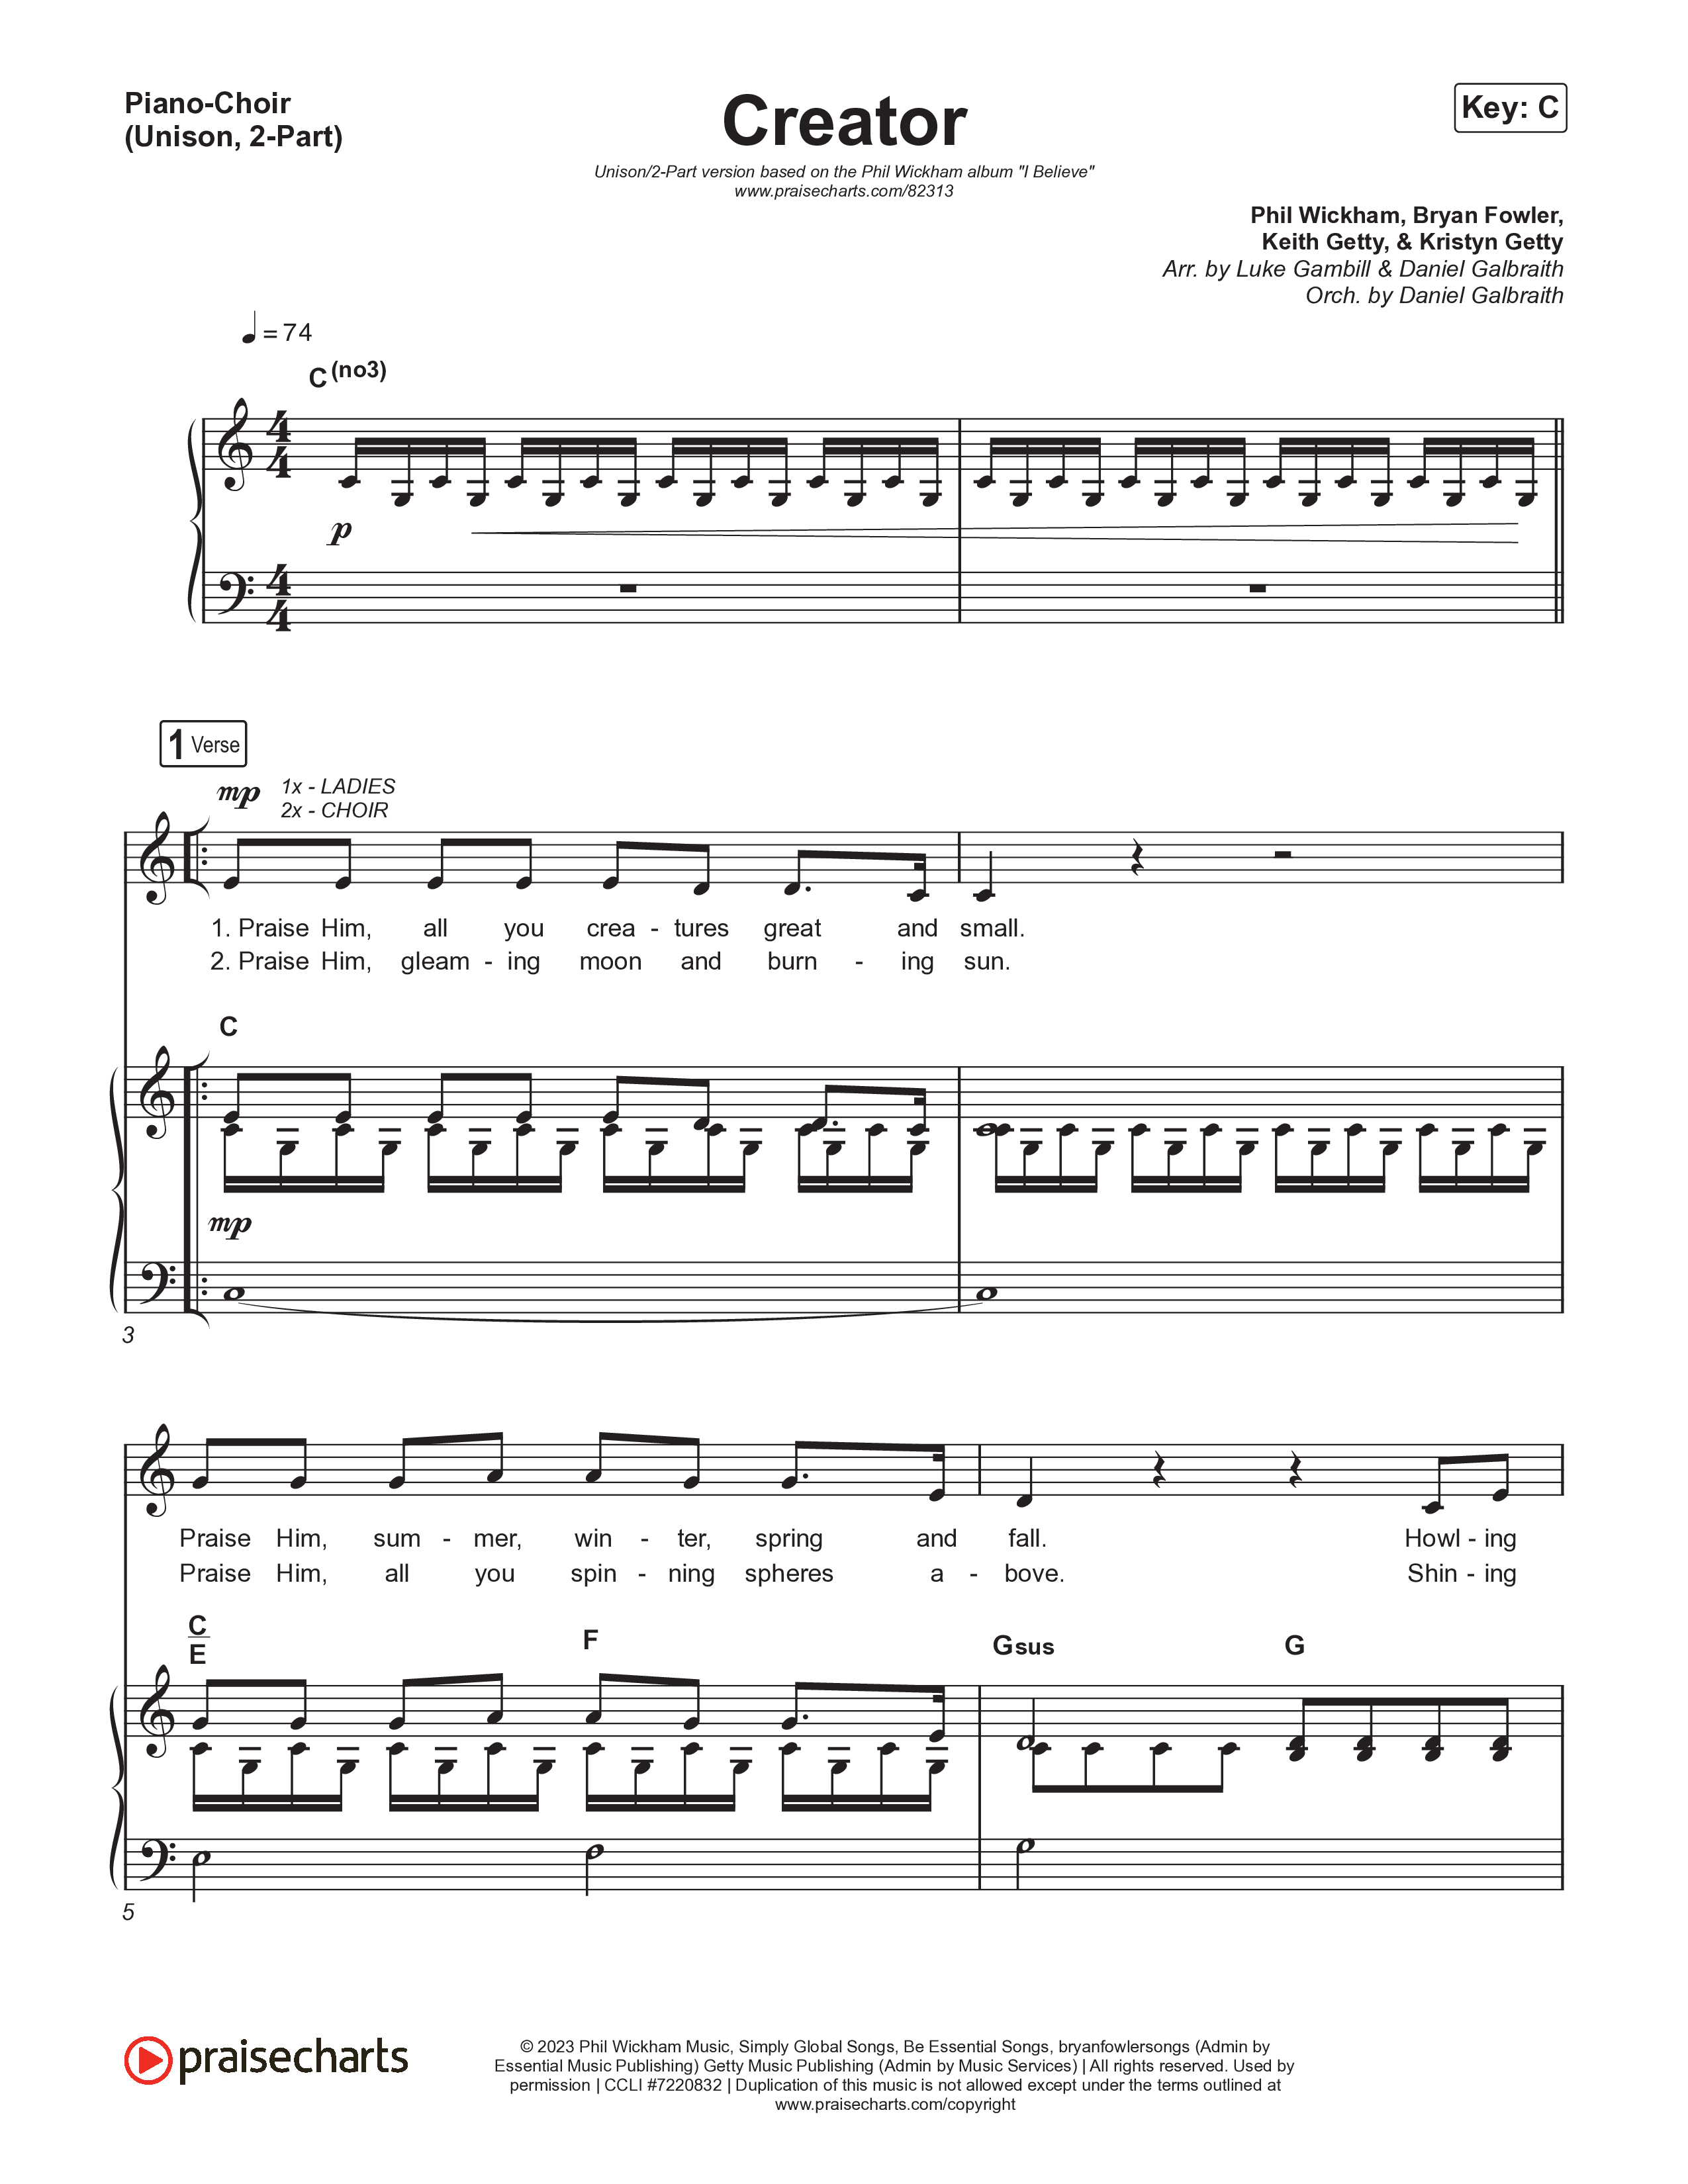 Creator (Unison/2-Part) Piano/Choir  (Uni/2-Part) (Phil Wickham)